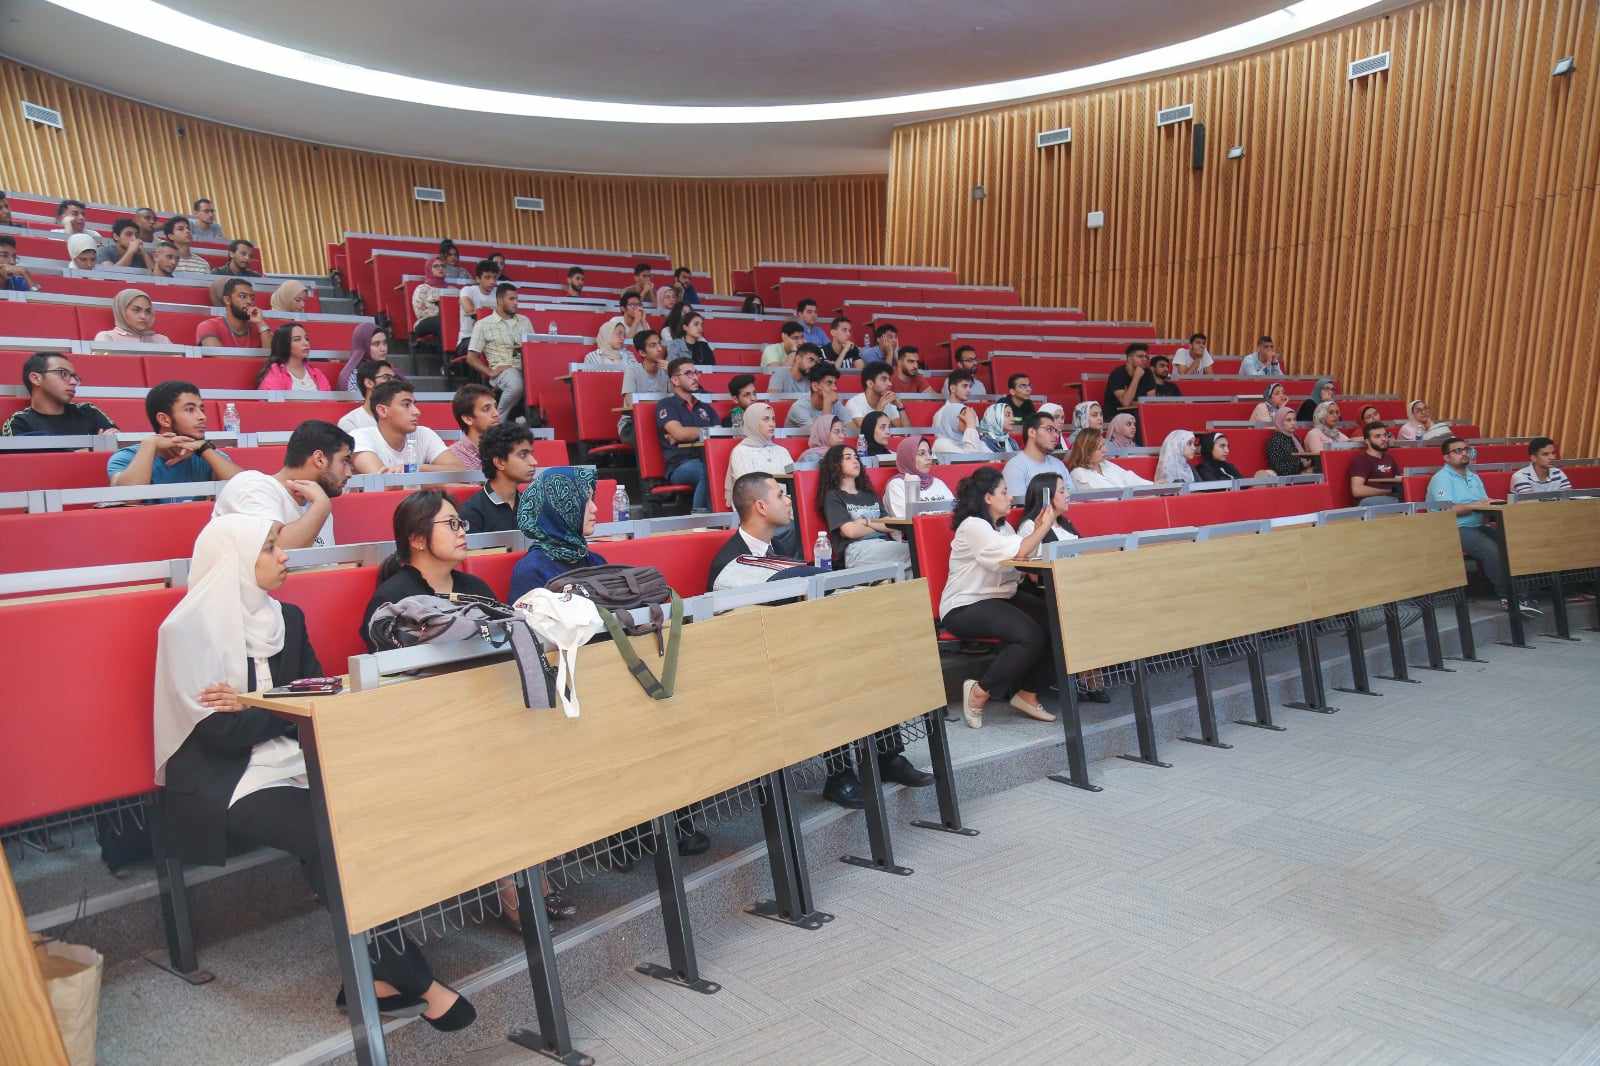 دورة مكثفة اختيارية فى اللغة اليابانية لطلاب الجامعة المصرية اليابانية